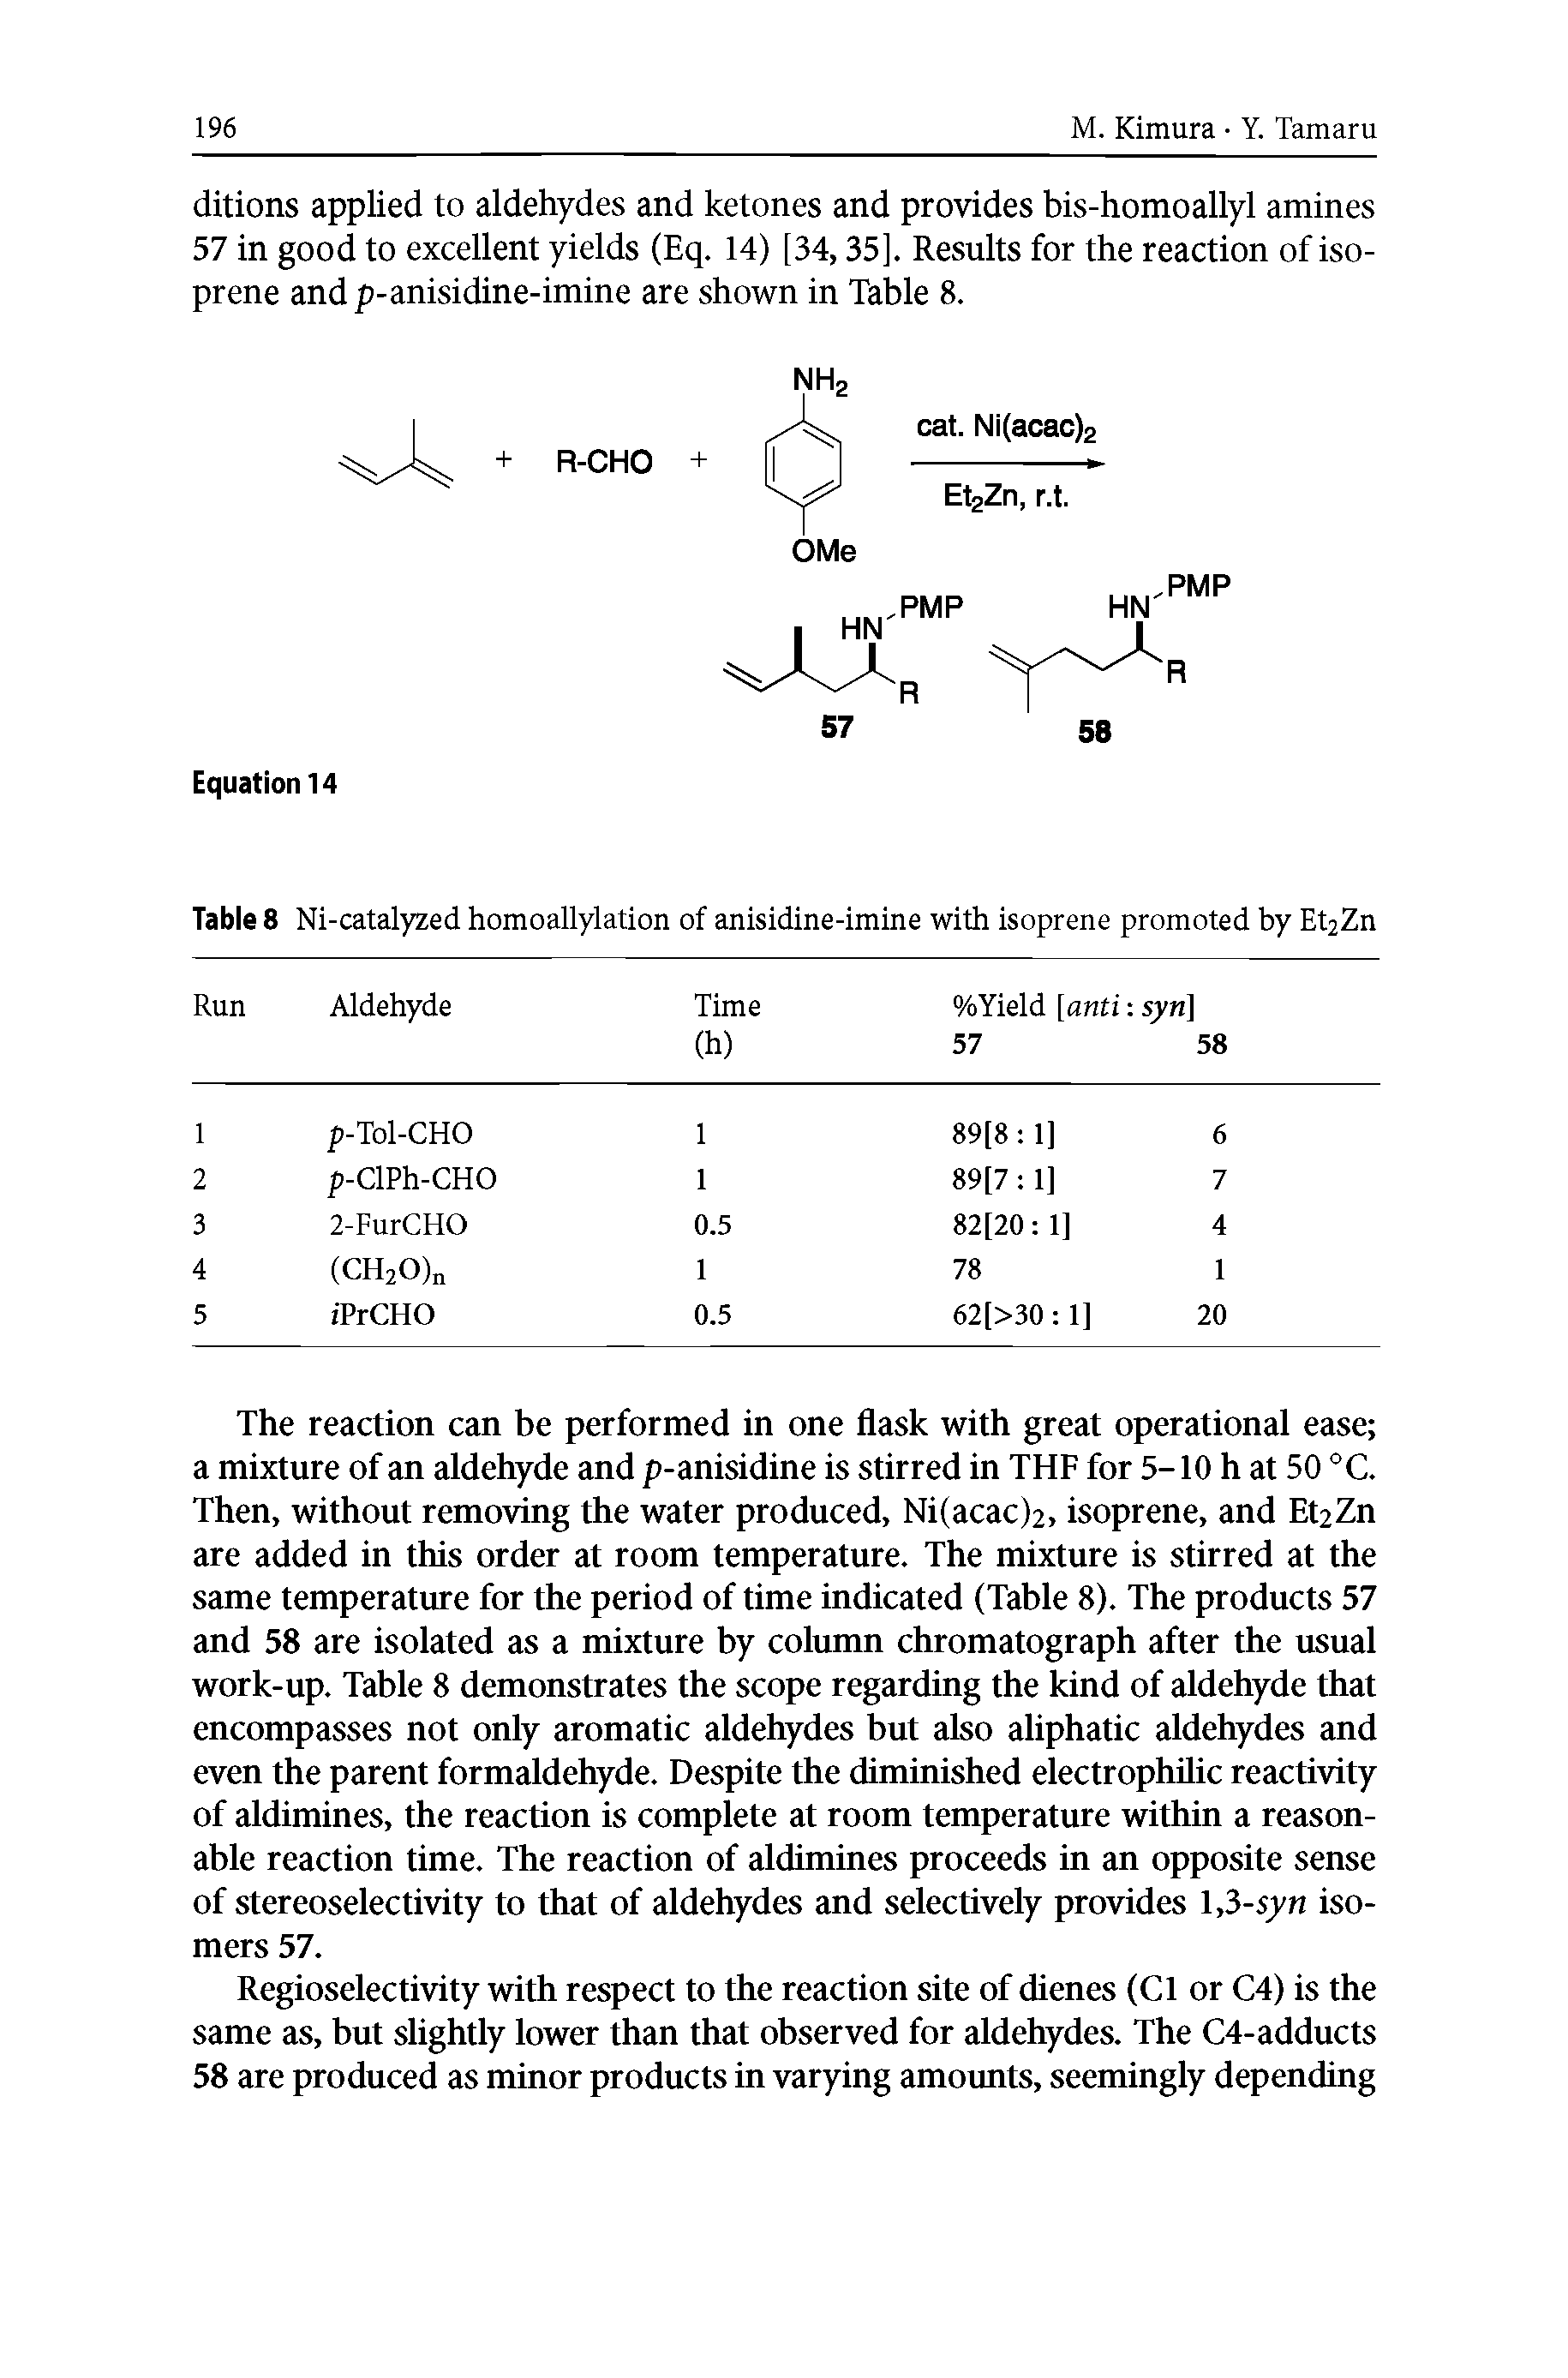 Table 8 Ni-catalyzed homoallylation of anisidine-imine with isoprene promoted by Et2Zn...